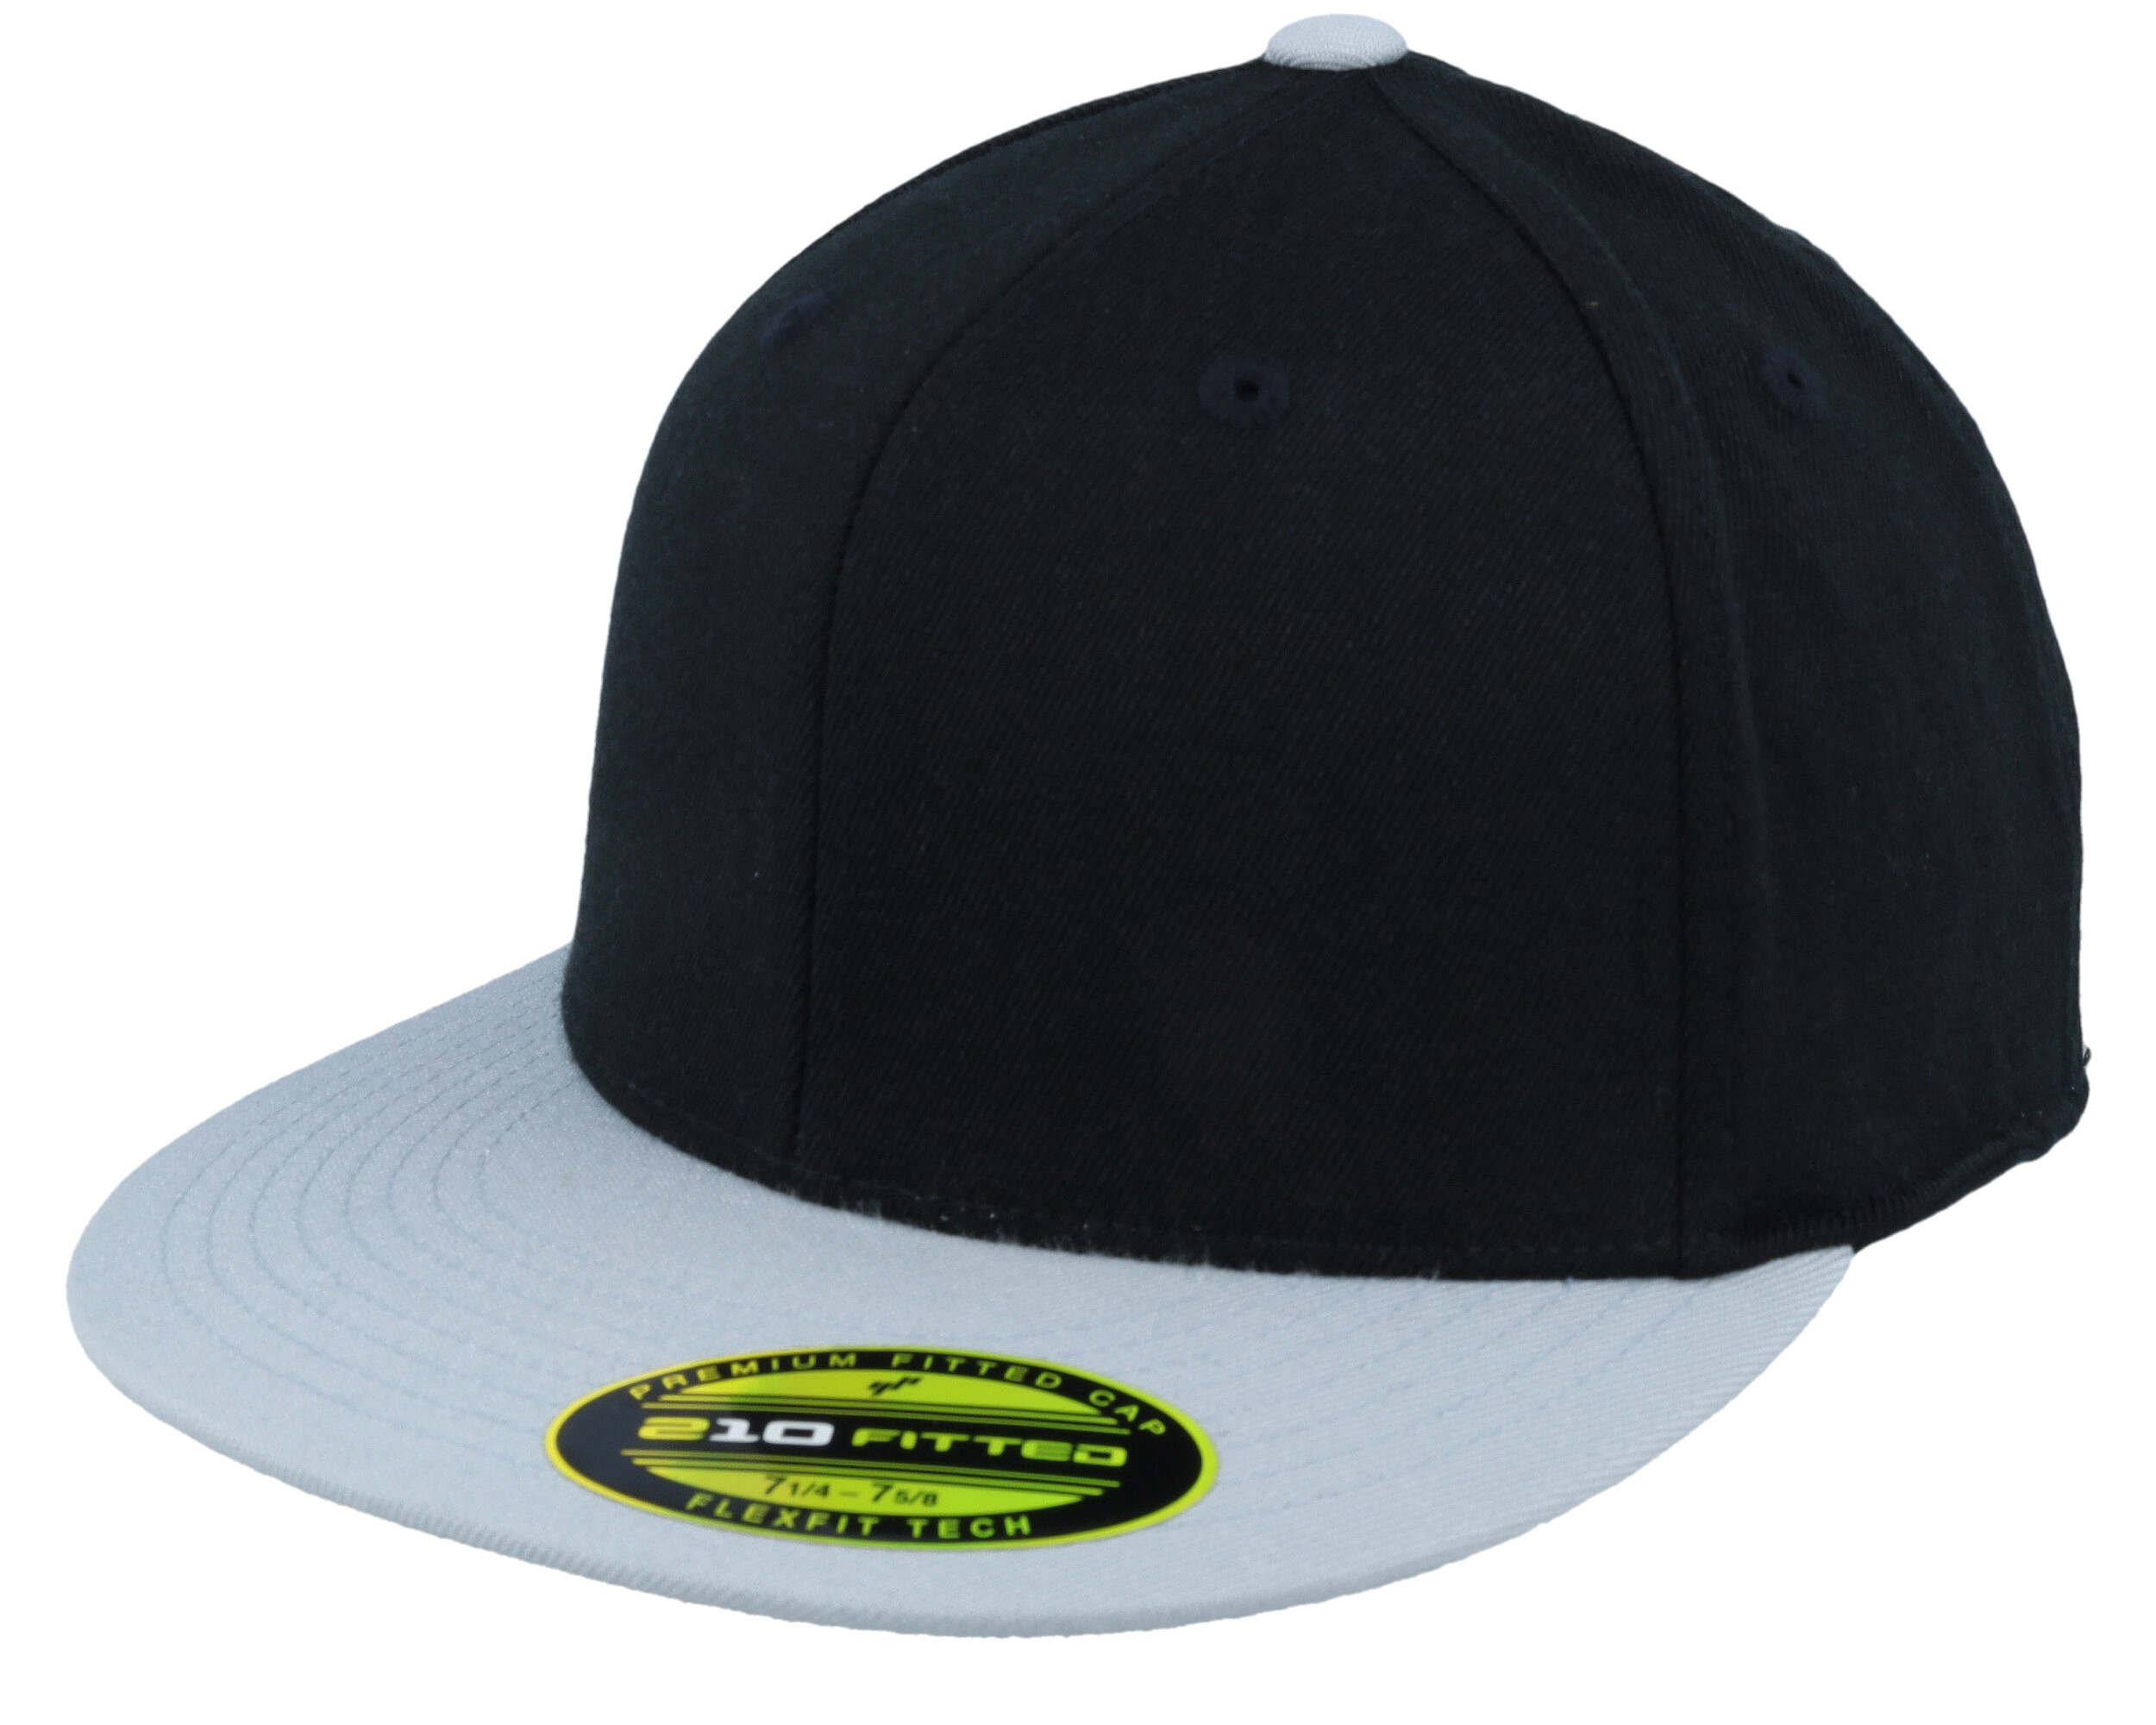 Premium 210 2-Tone Black/Grey Fitted - Flexfit cap